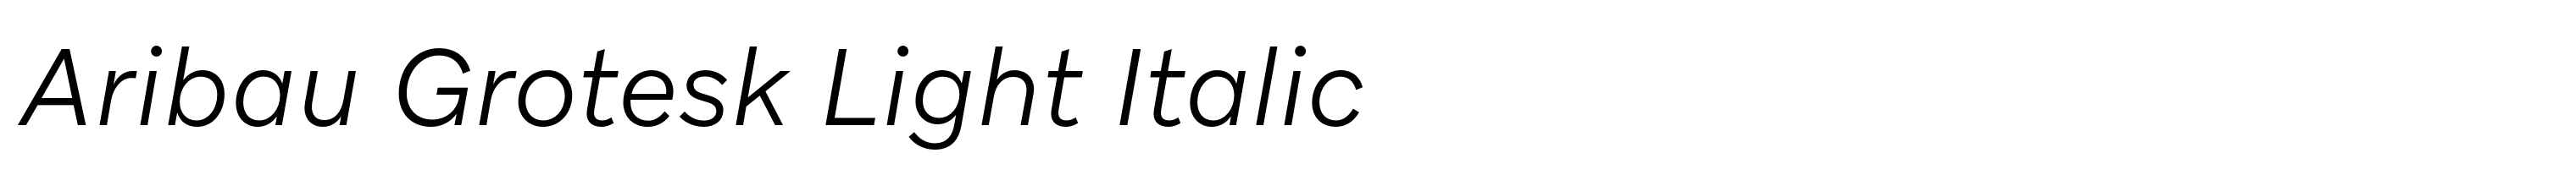 Aribau Grotesk Light Italic